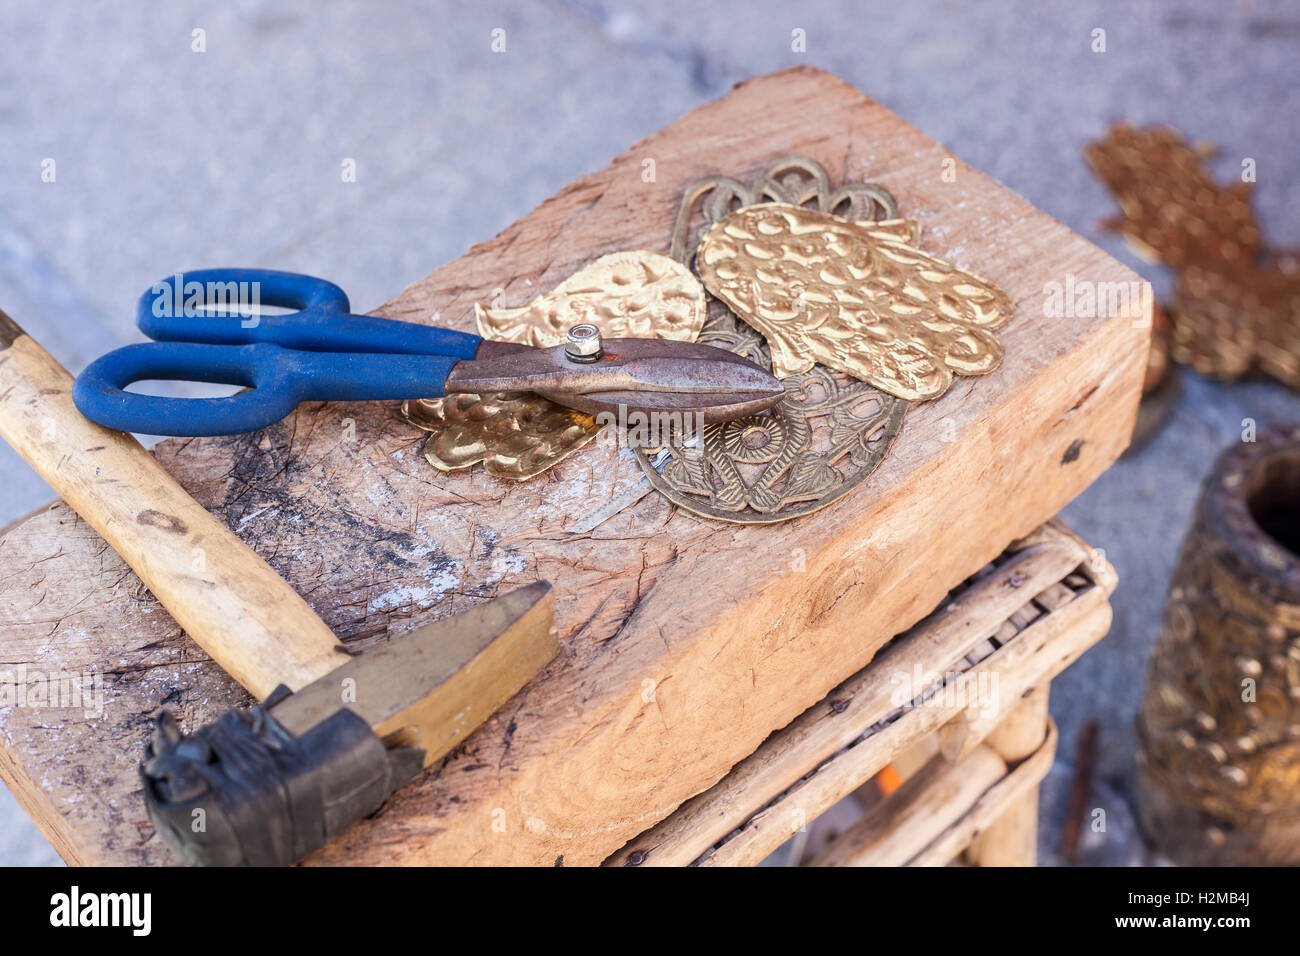 Handwerker-Bank mit Werkzeugen für Gravieren Hamsa Palm-förmigen Messing Amulette Stockfoto